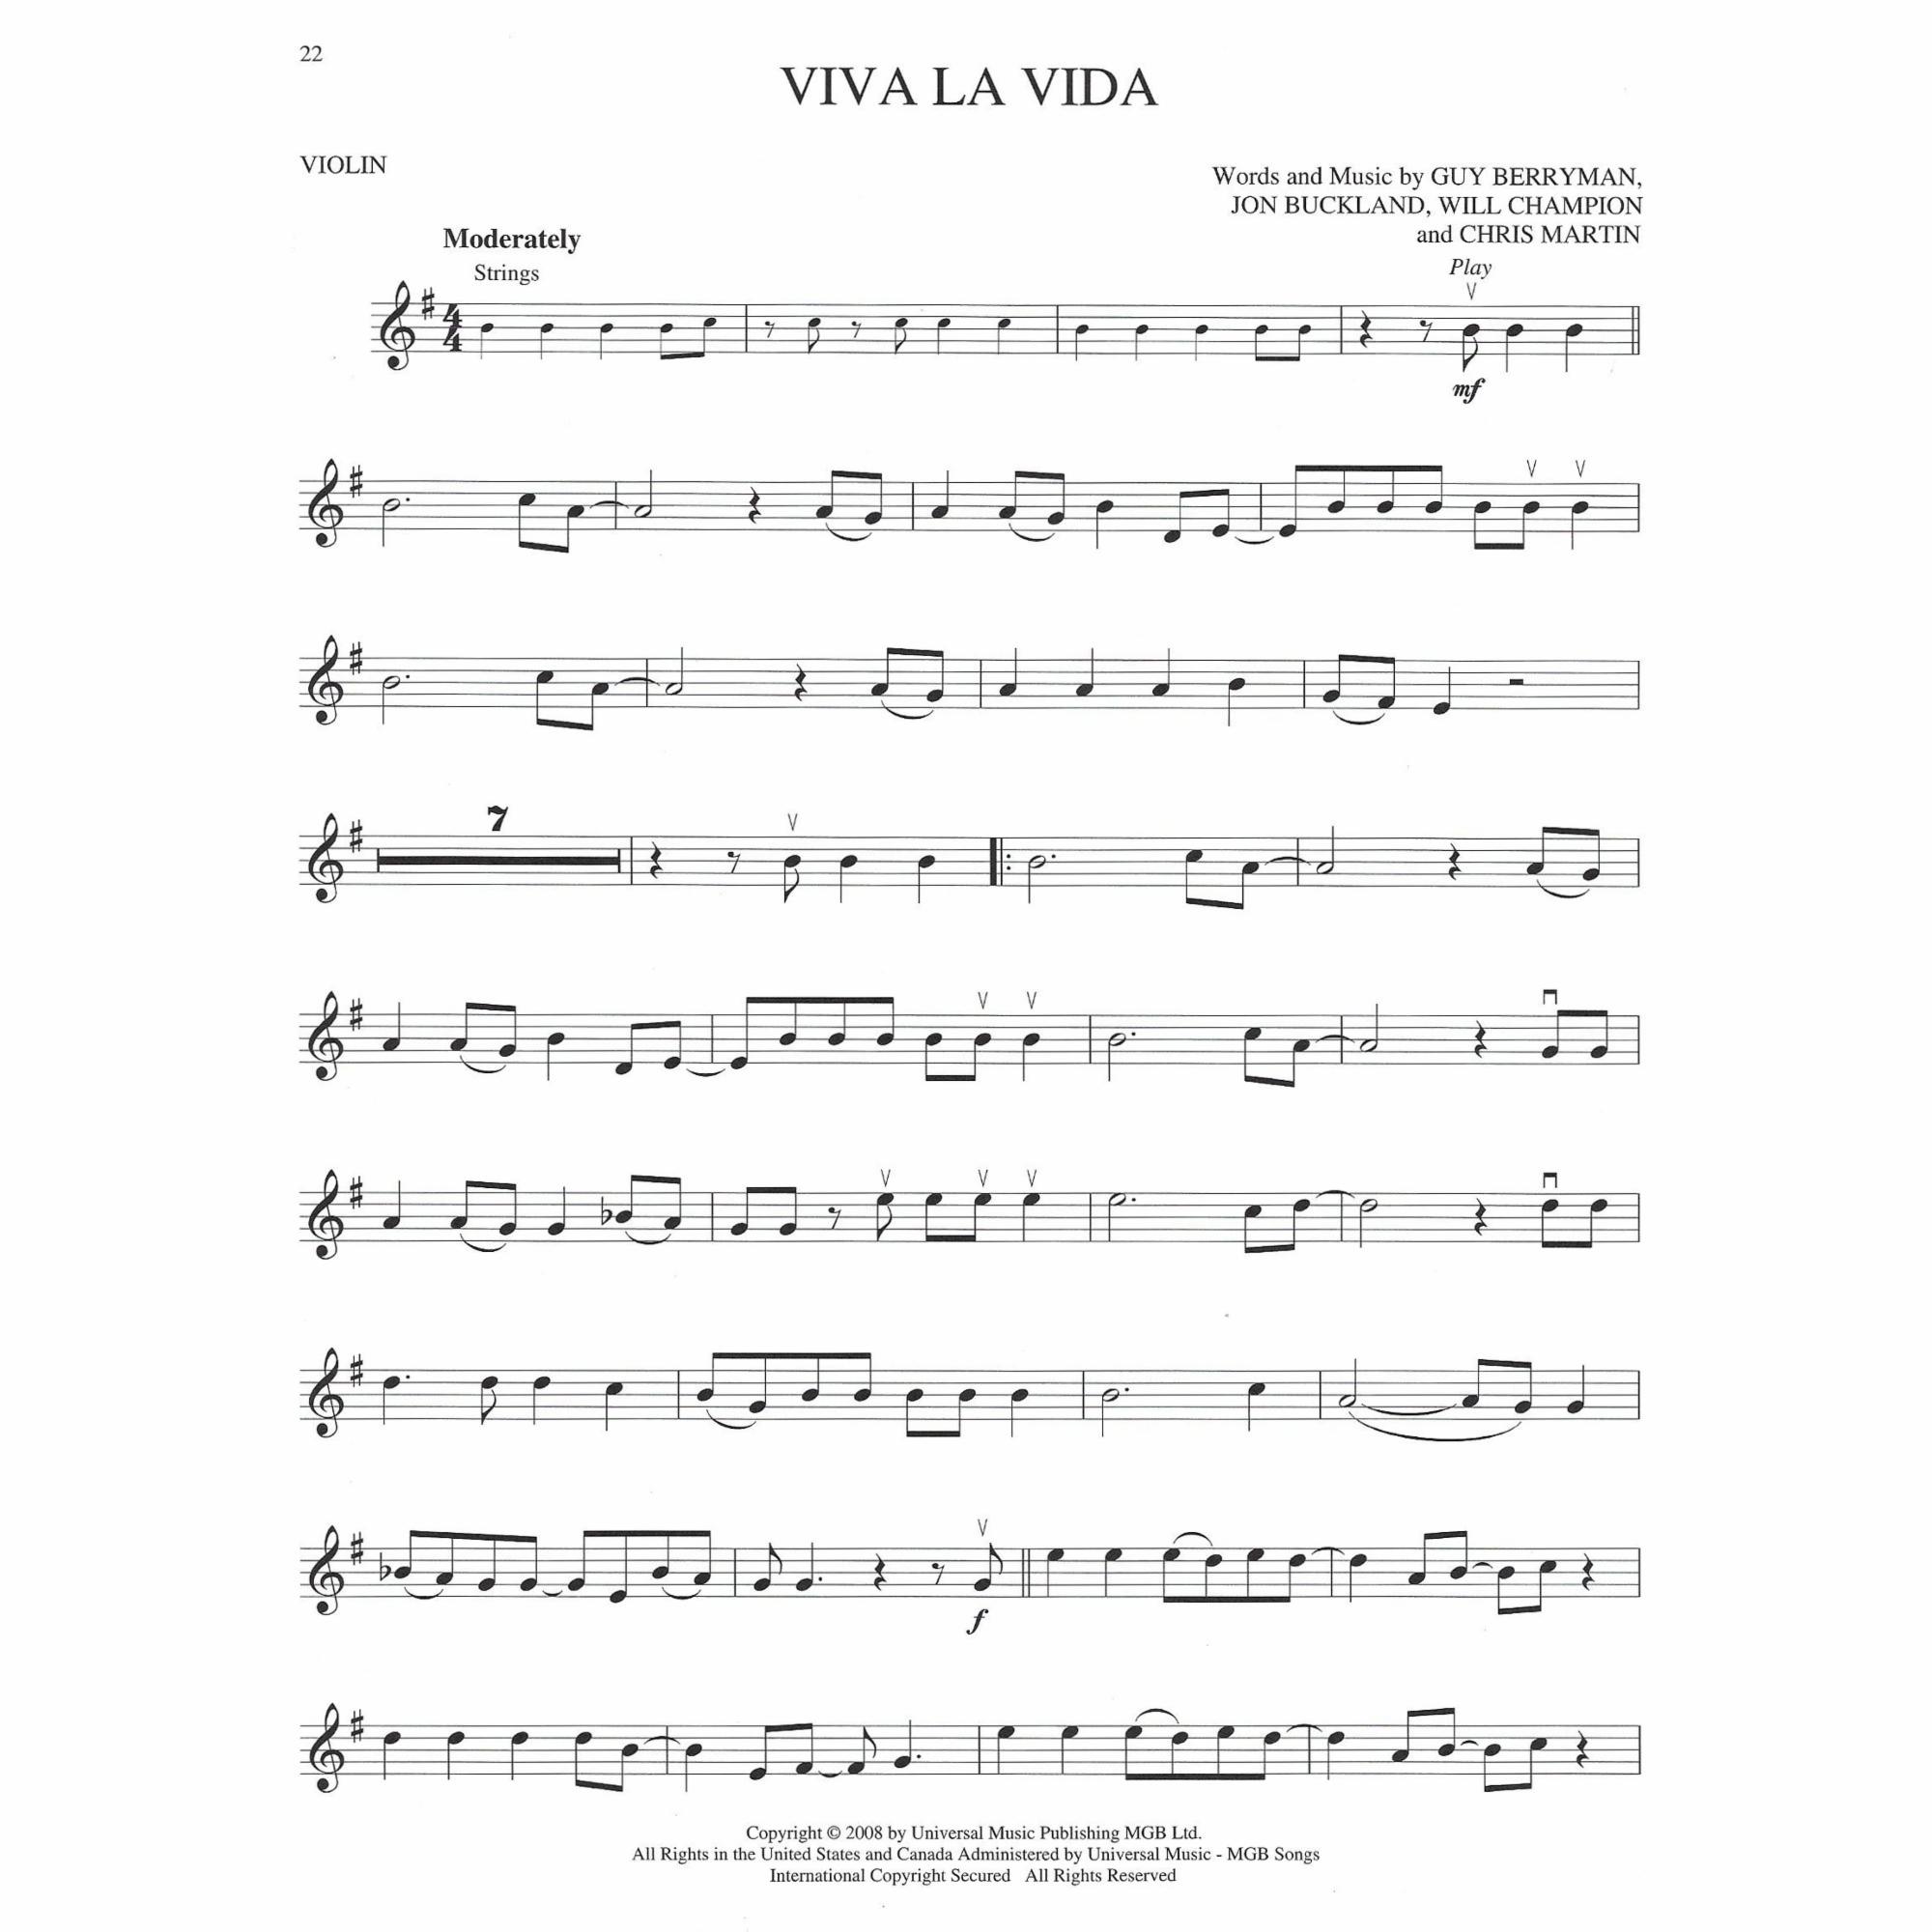 Sample: Violin (Pg. 22)